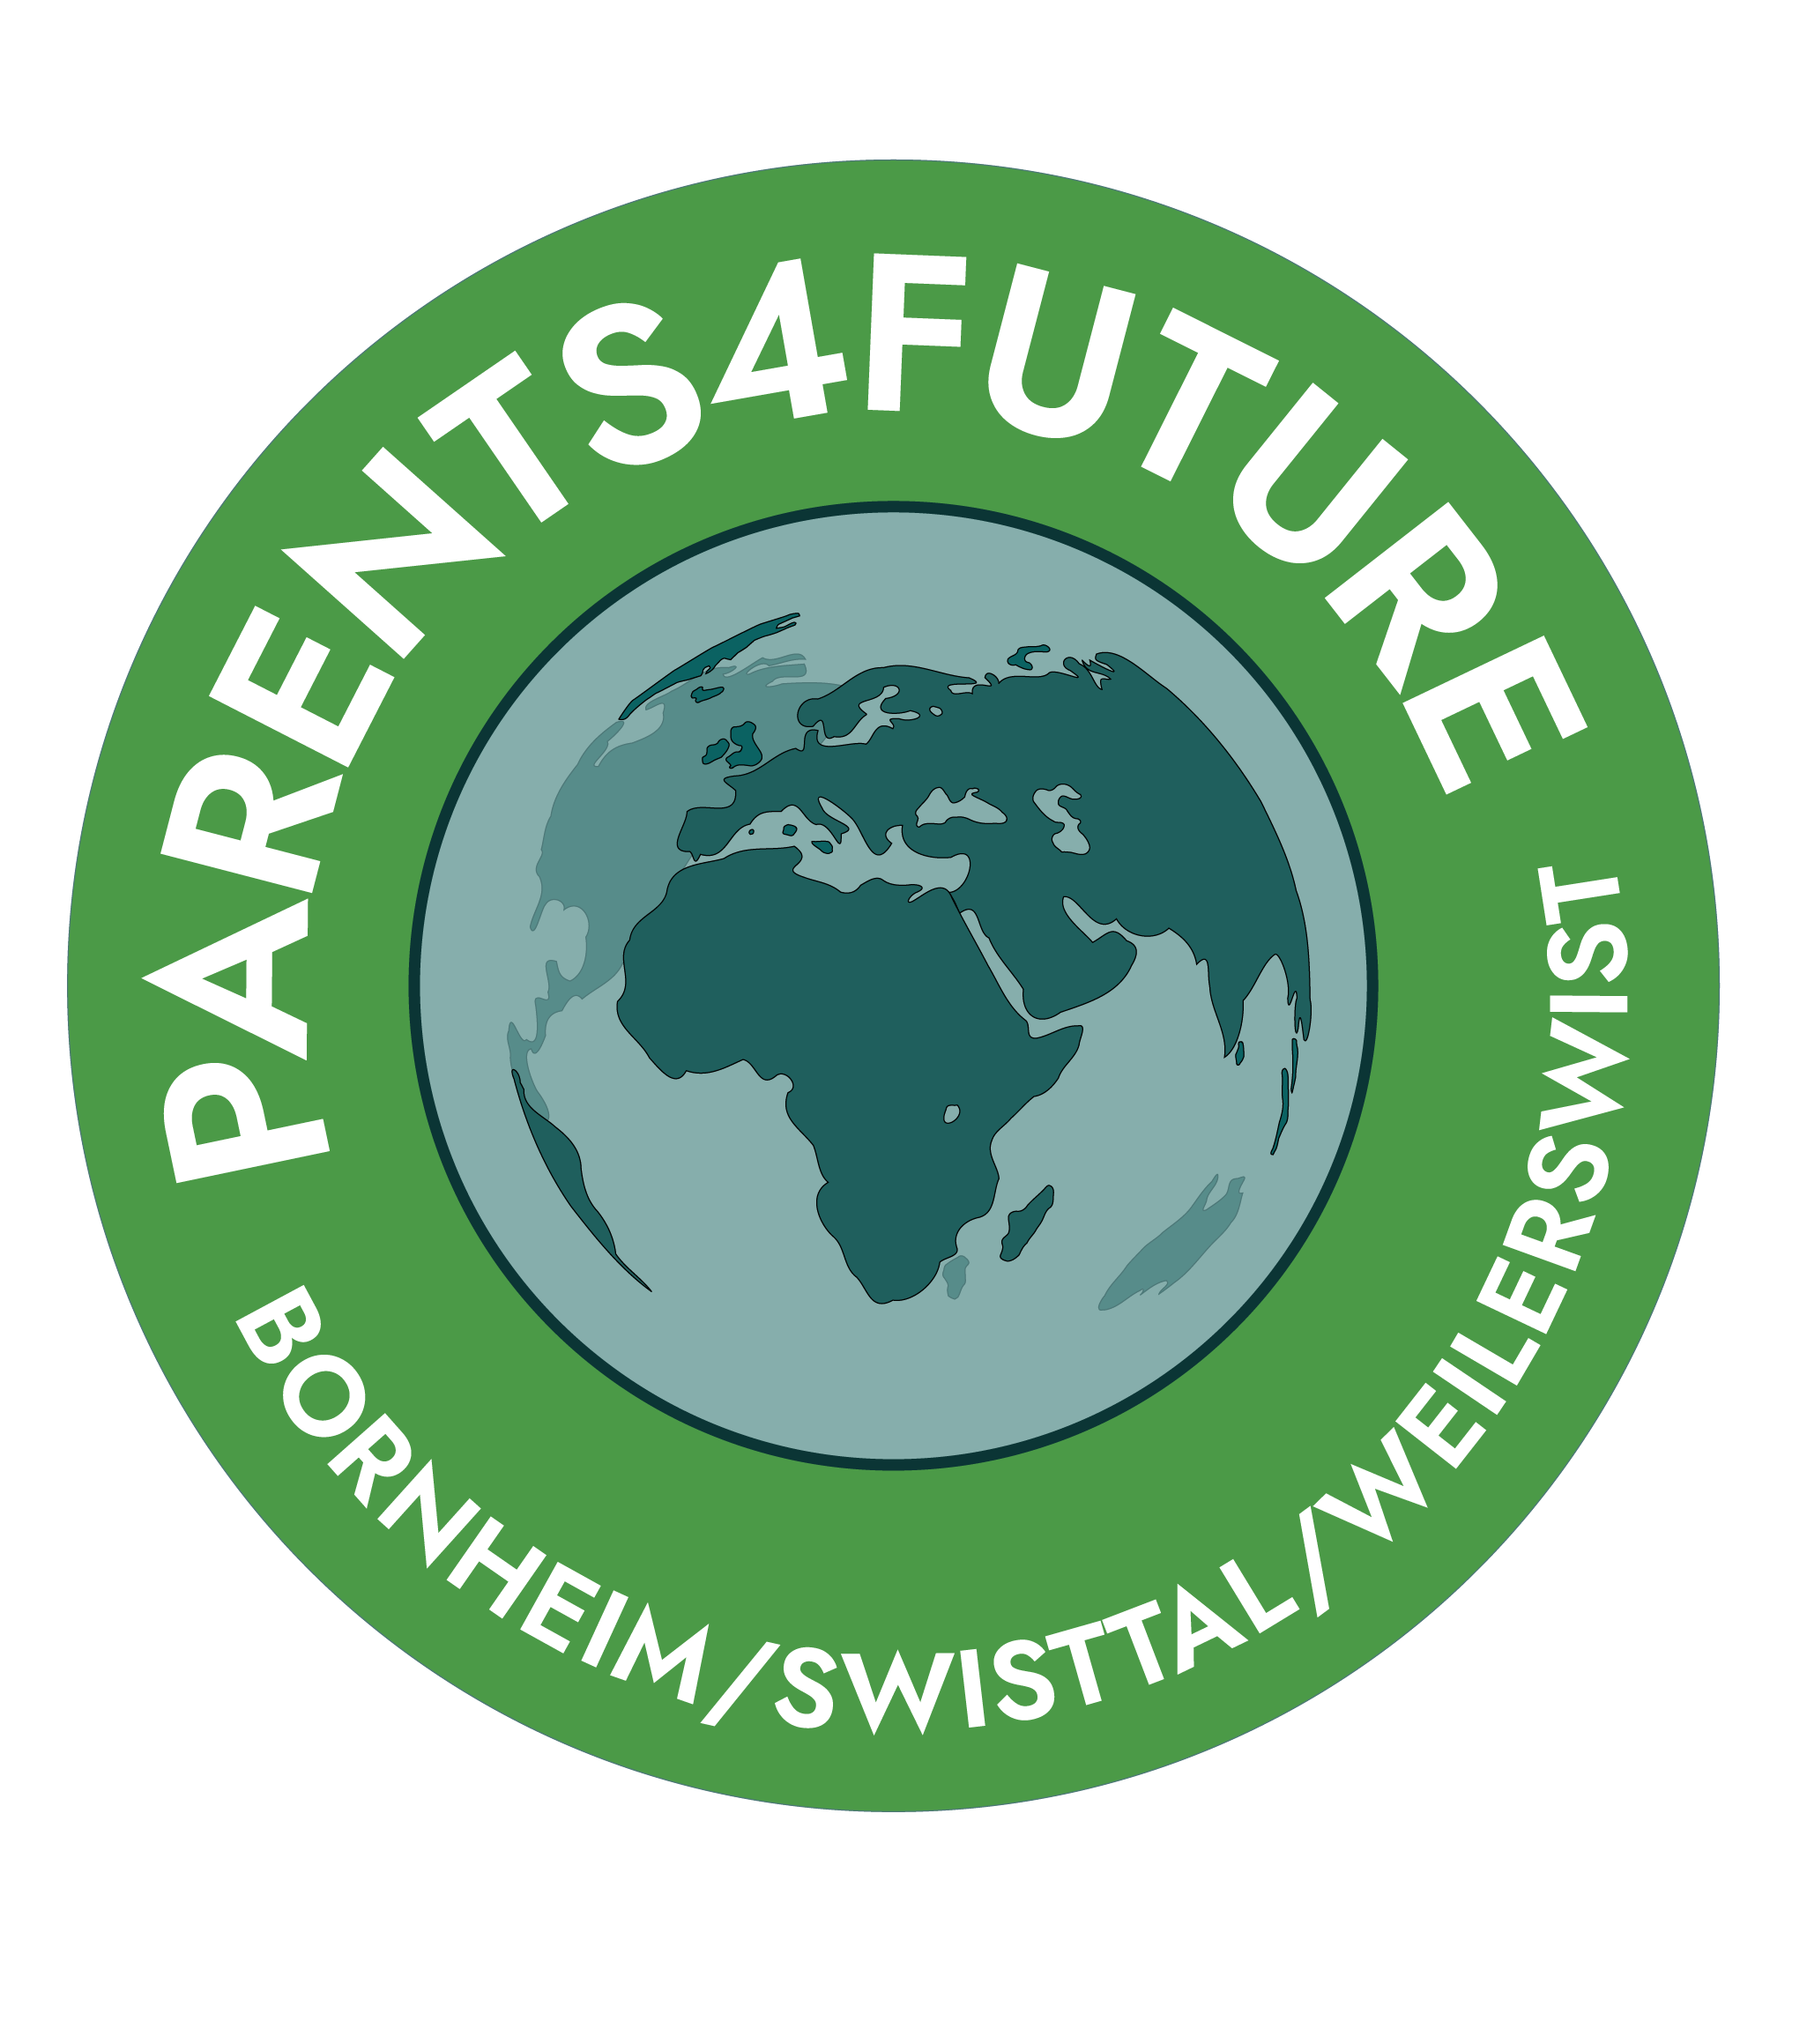 Parents for Future Bornheim/ Swisttal/ Weilerswist